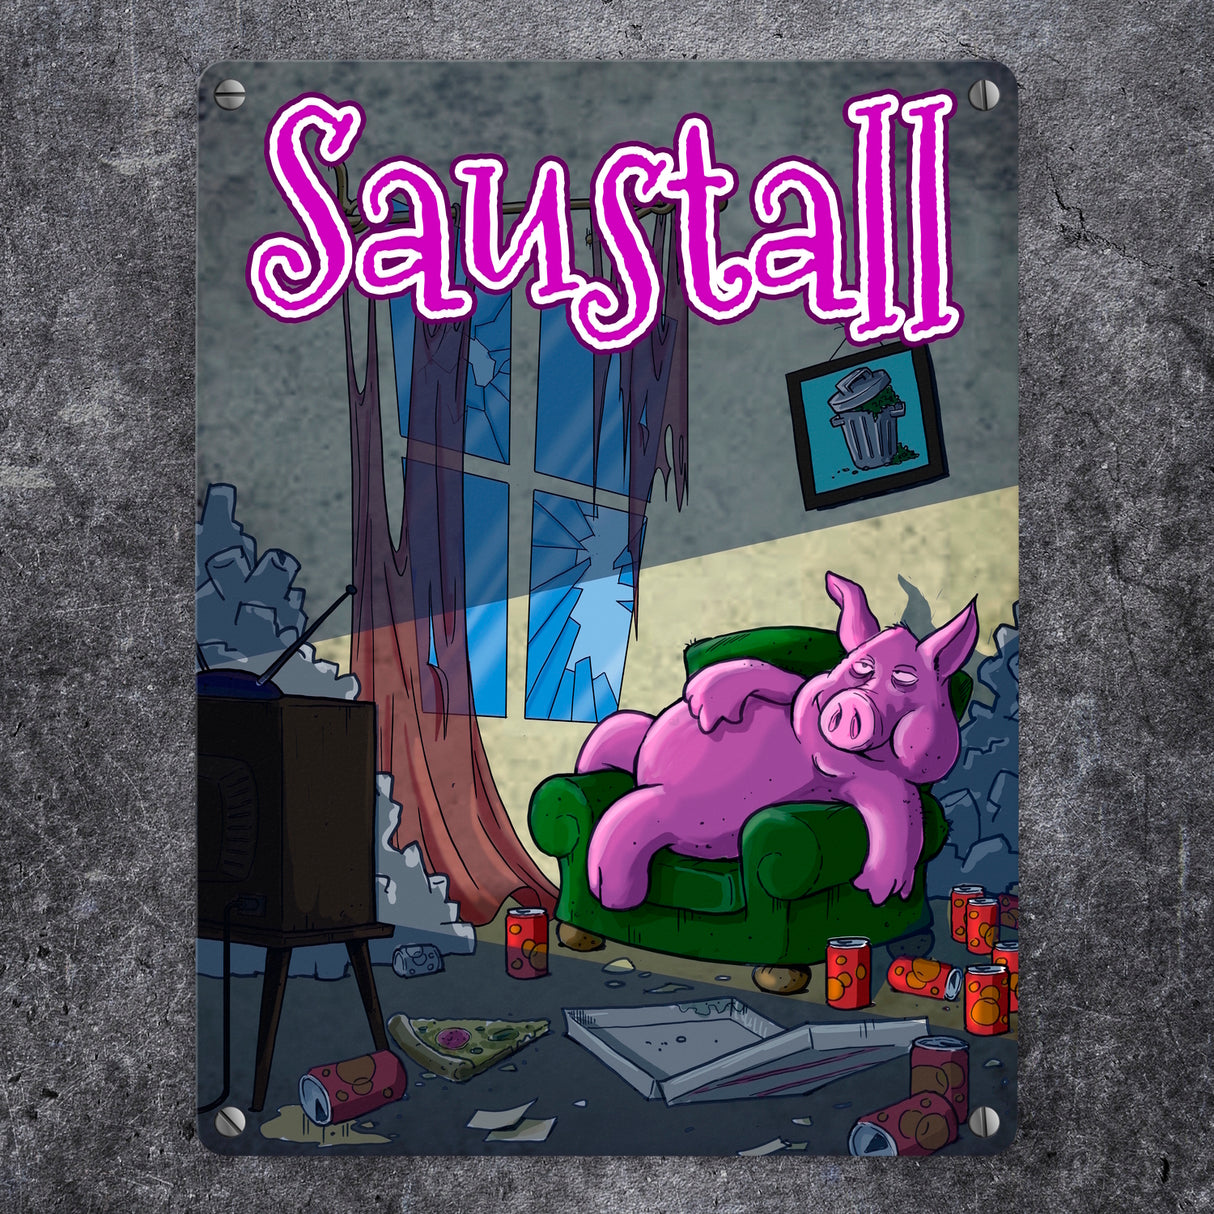 Metallschild mit Motiv - Saustall und Motiv: dickes Schwein liegt auf Couch